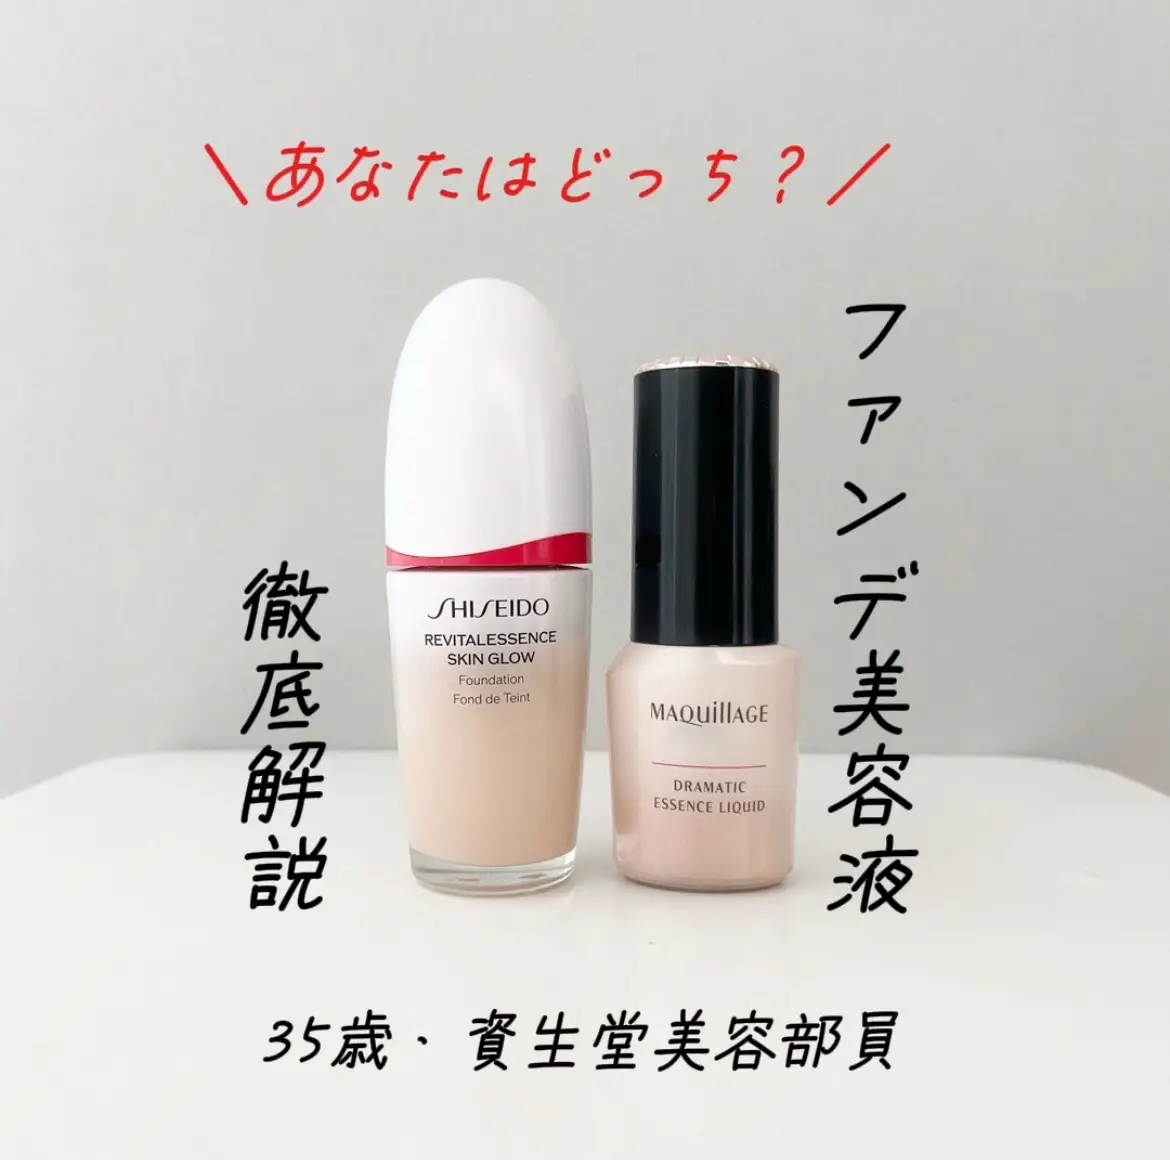 あなたはどっち派❓🤭 #shiseido #資生堂 #ファンデーション #ファンデ美容液 #リキッドファンデ  　